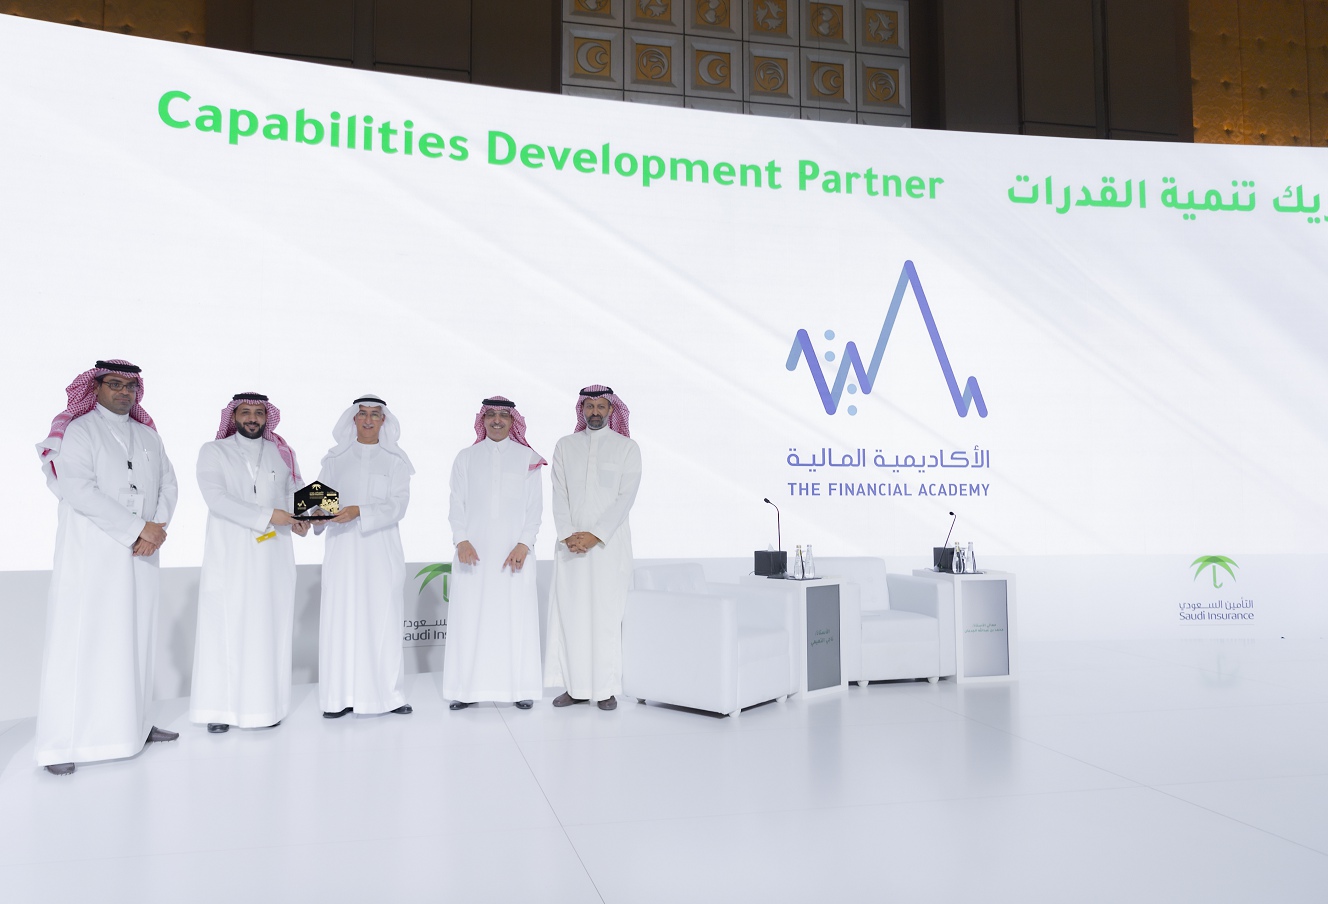 الأكاديمية المالية شريك تنمية القدرات في ندوة التأمين السعودي السادسة